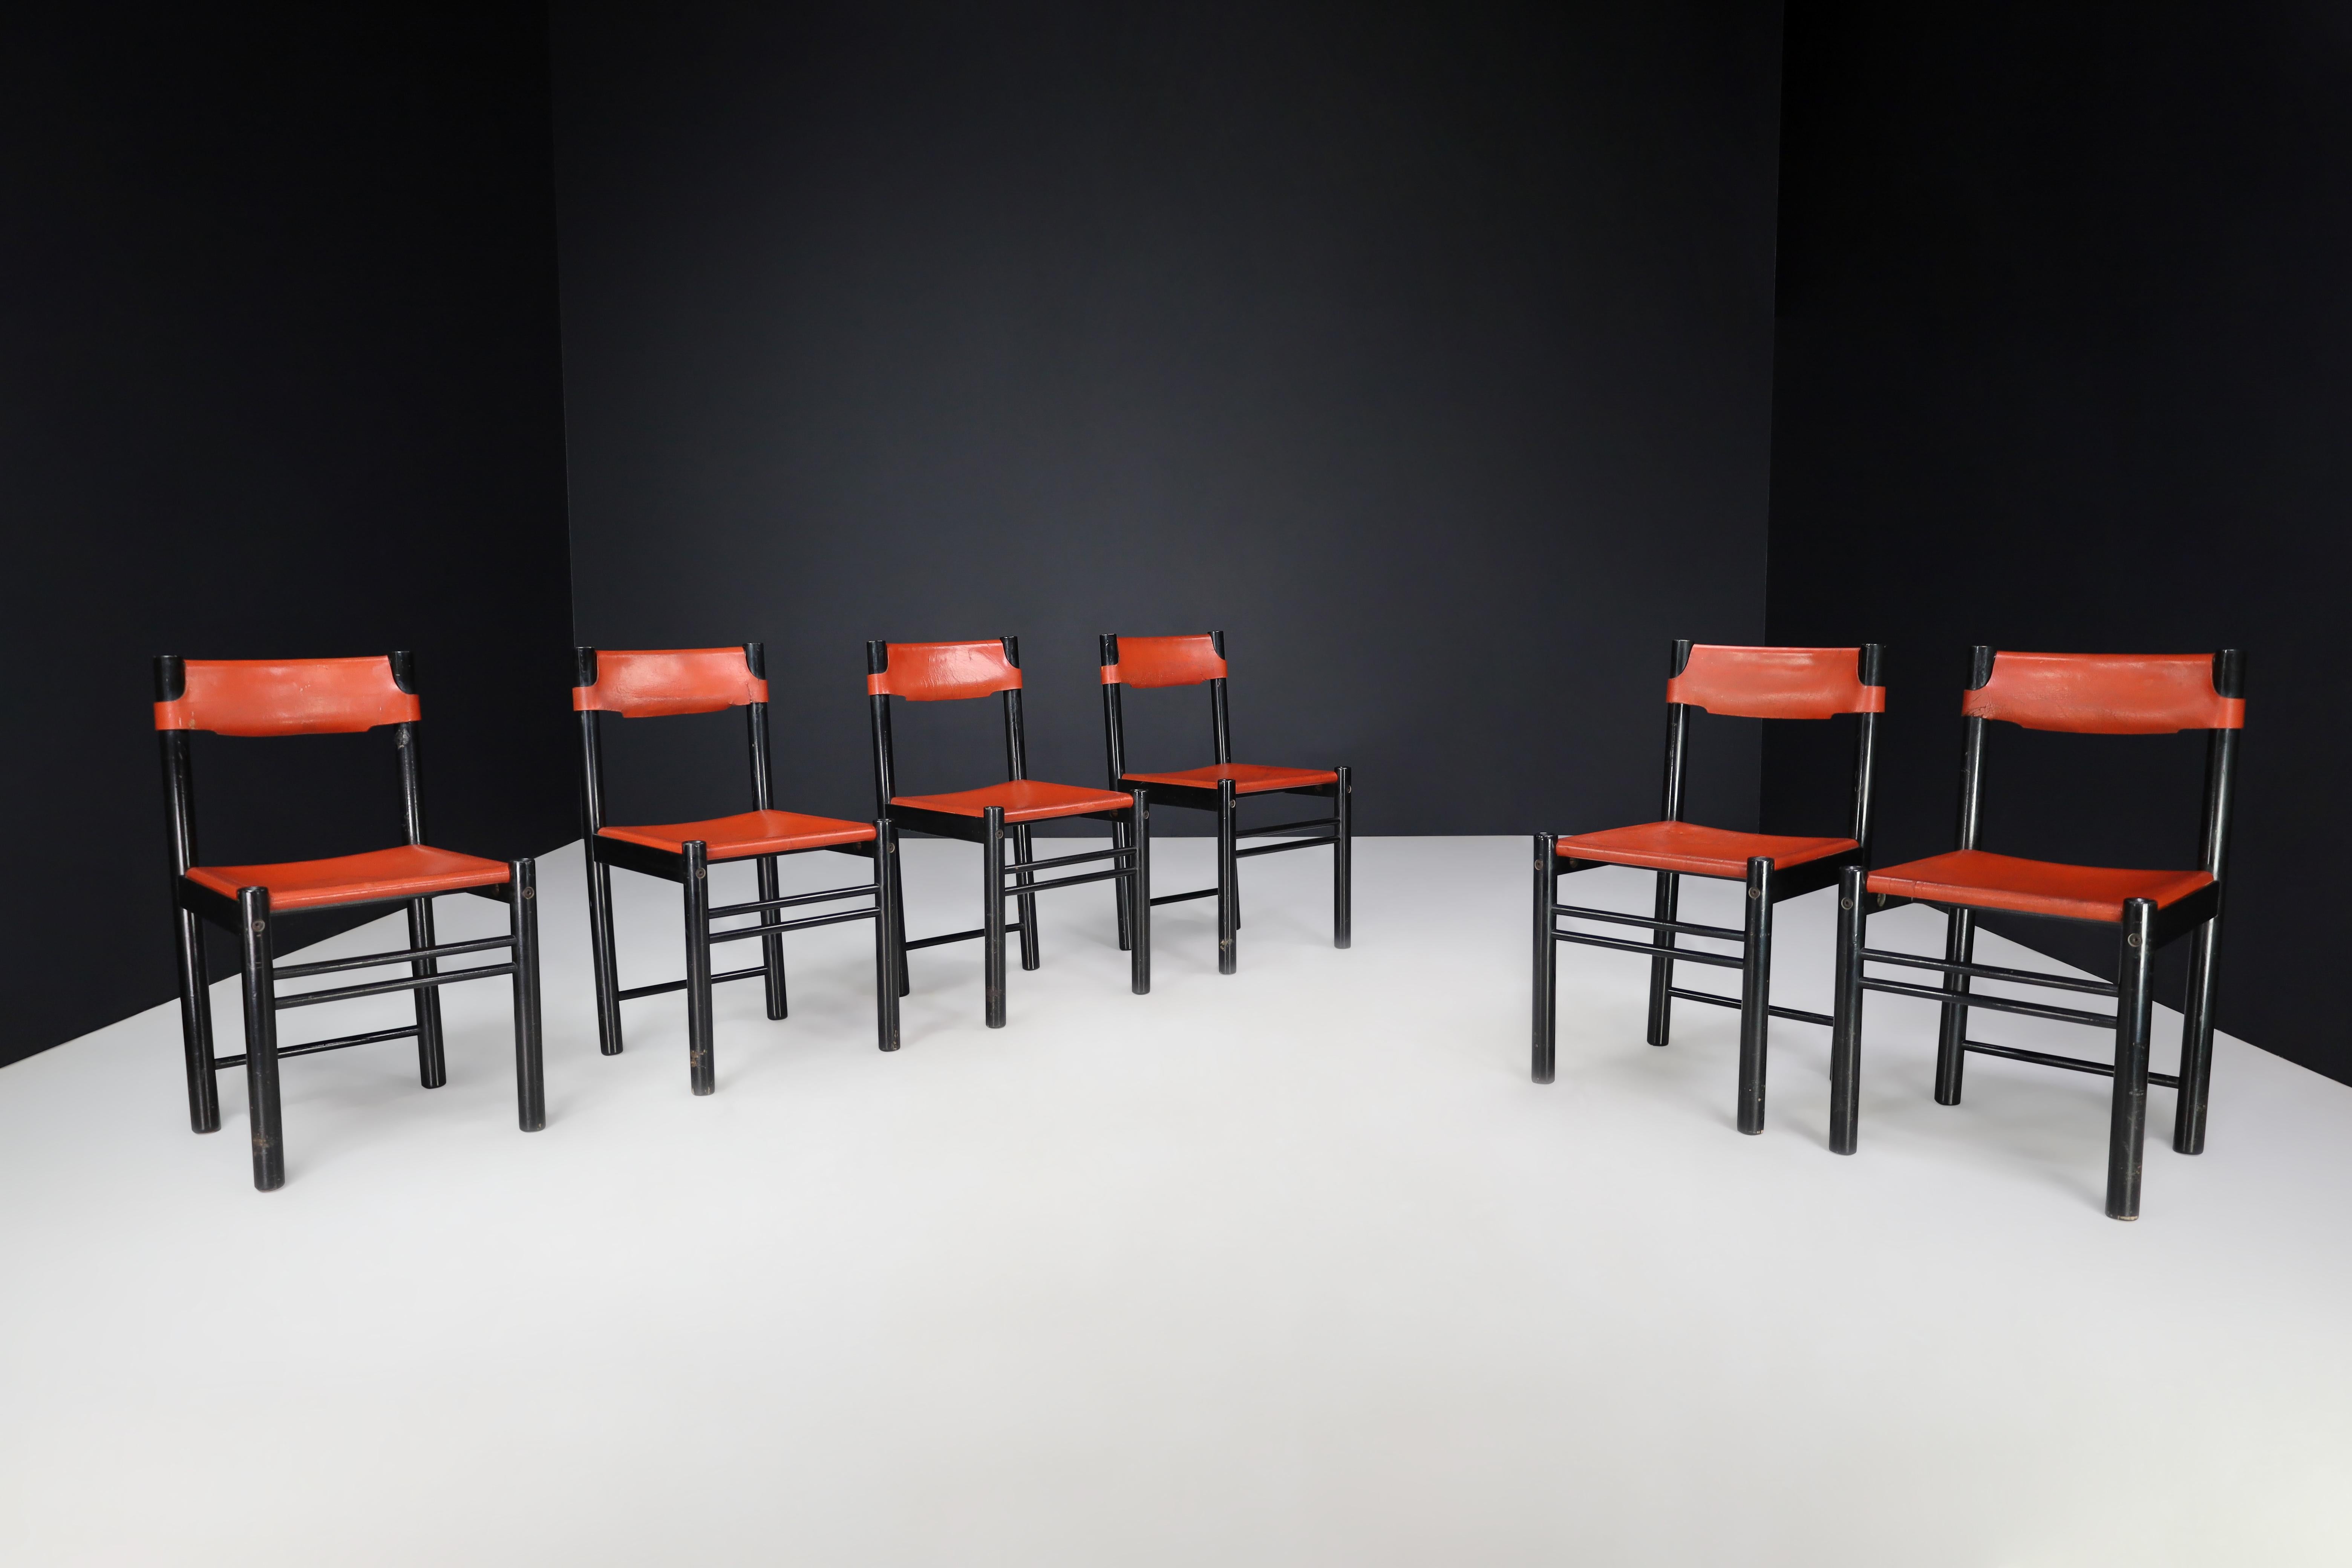 Ibisco Sedie Ensemble de six chaises de salle à manger en cuir cognac patiné, Italie, années 1970 

Cet ensemble de six chaises de salle à manger, fabriqué en Italie dans les années 1970 par Ibisco Sedie, présente un design qui incarne l'éthique